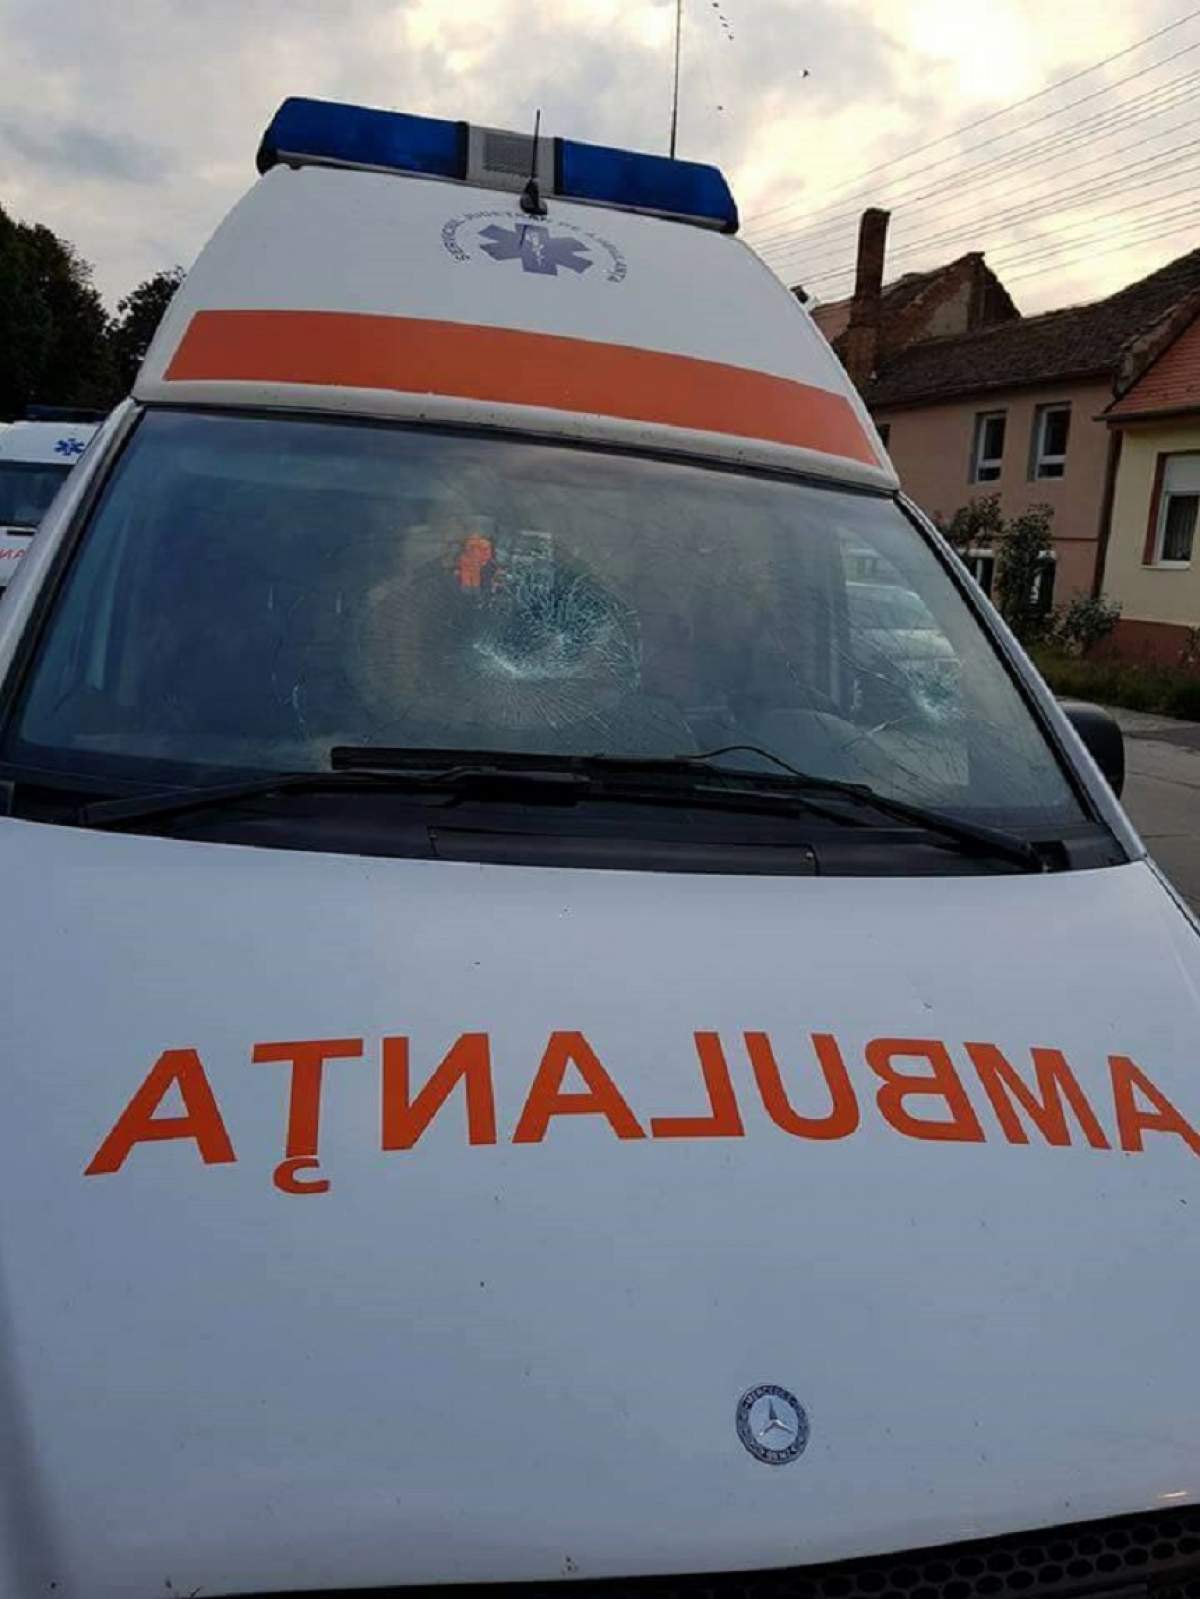 VIDEO / Ambulanţă vandalizată în Sibiu! Un bărbat a distrus maşina de salvare